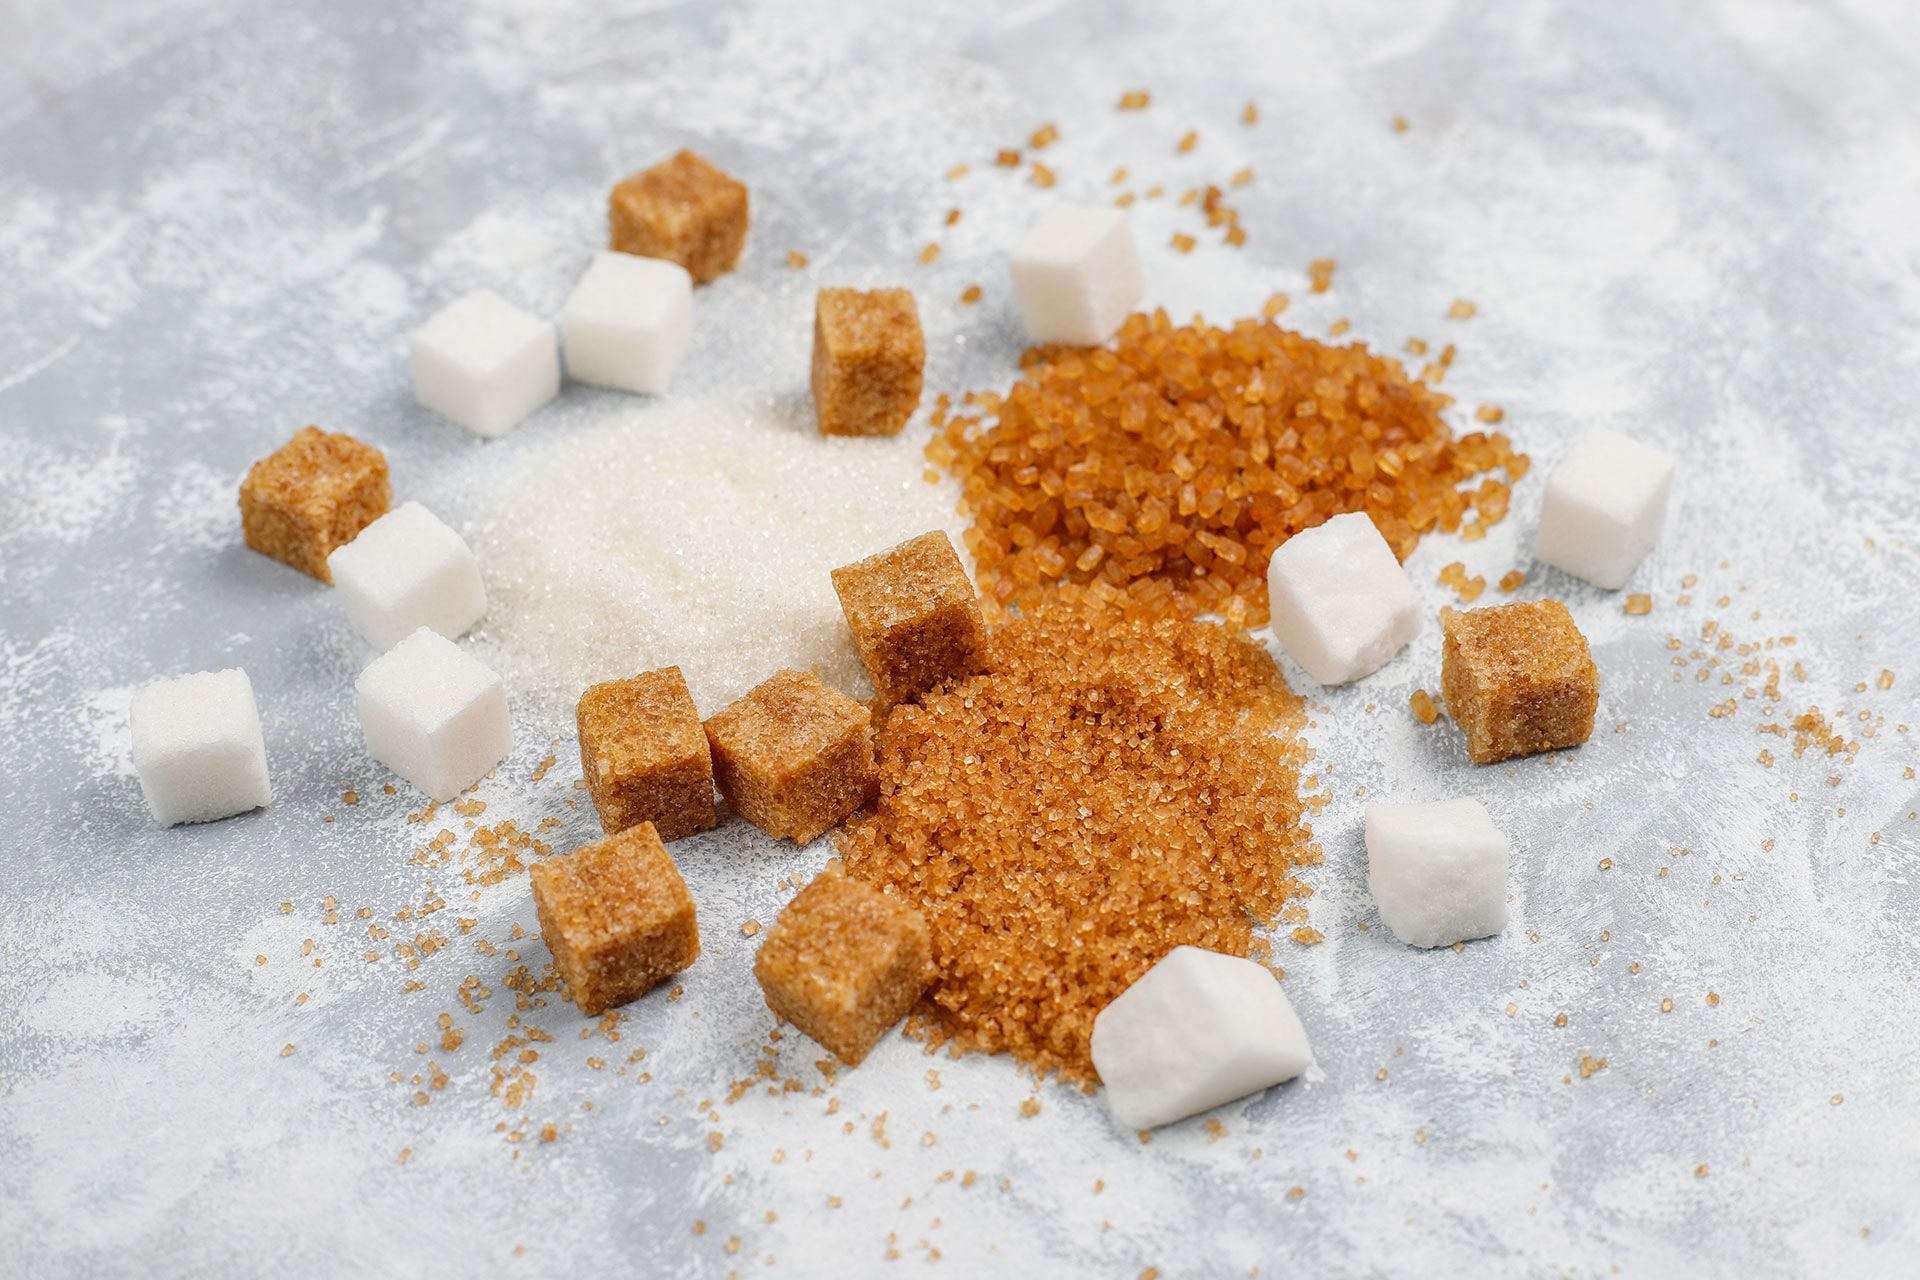 El consumo excesivo de azúcar es dañino para la salud (Freepik)